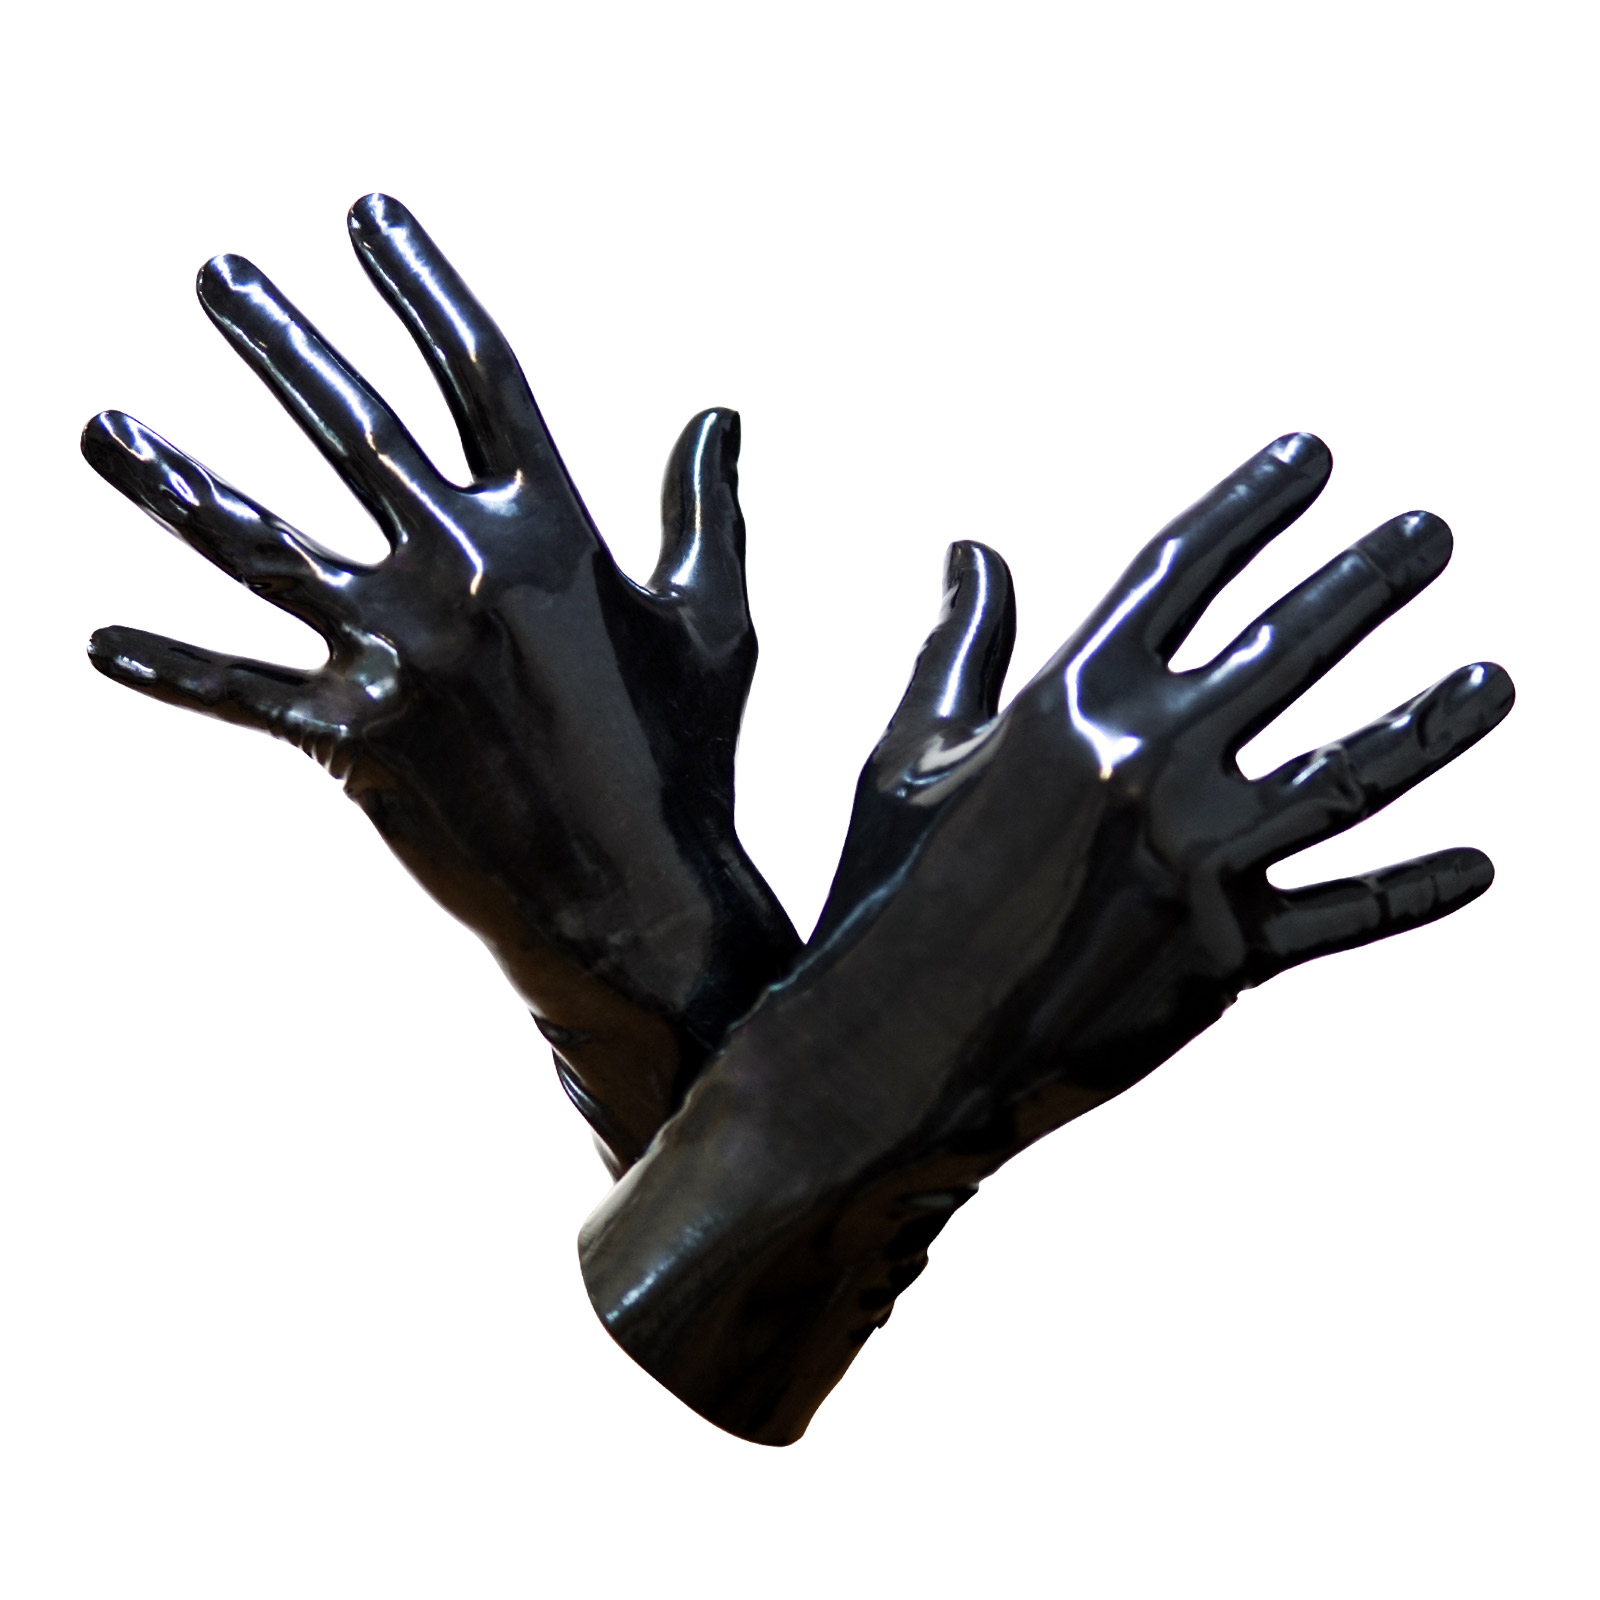 Toylie Latex Handschuhe «XL» schwarz, nahtlos, mit anatomischer Passform